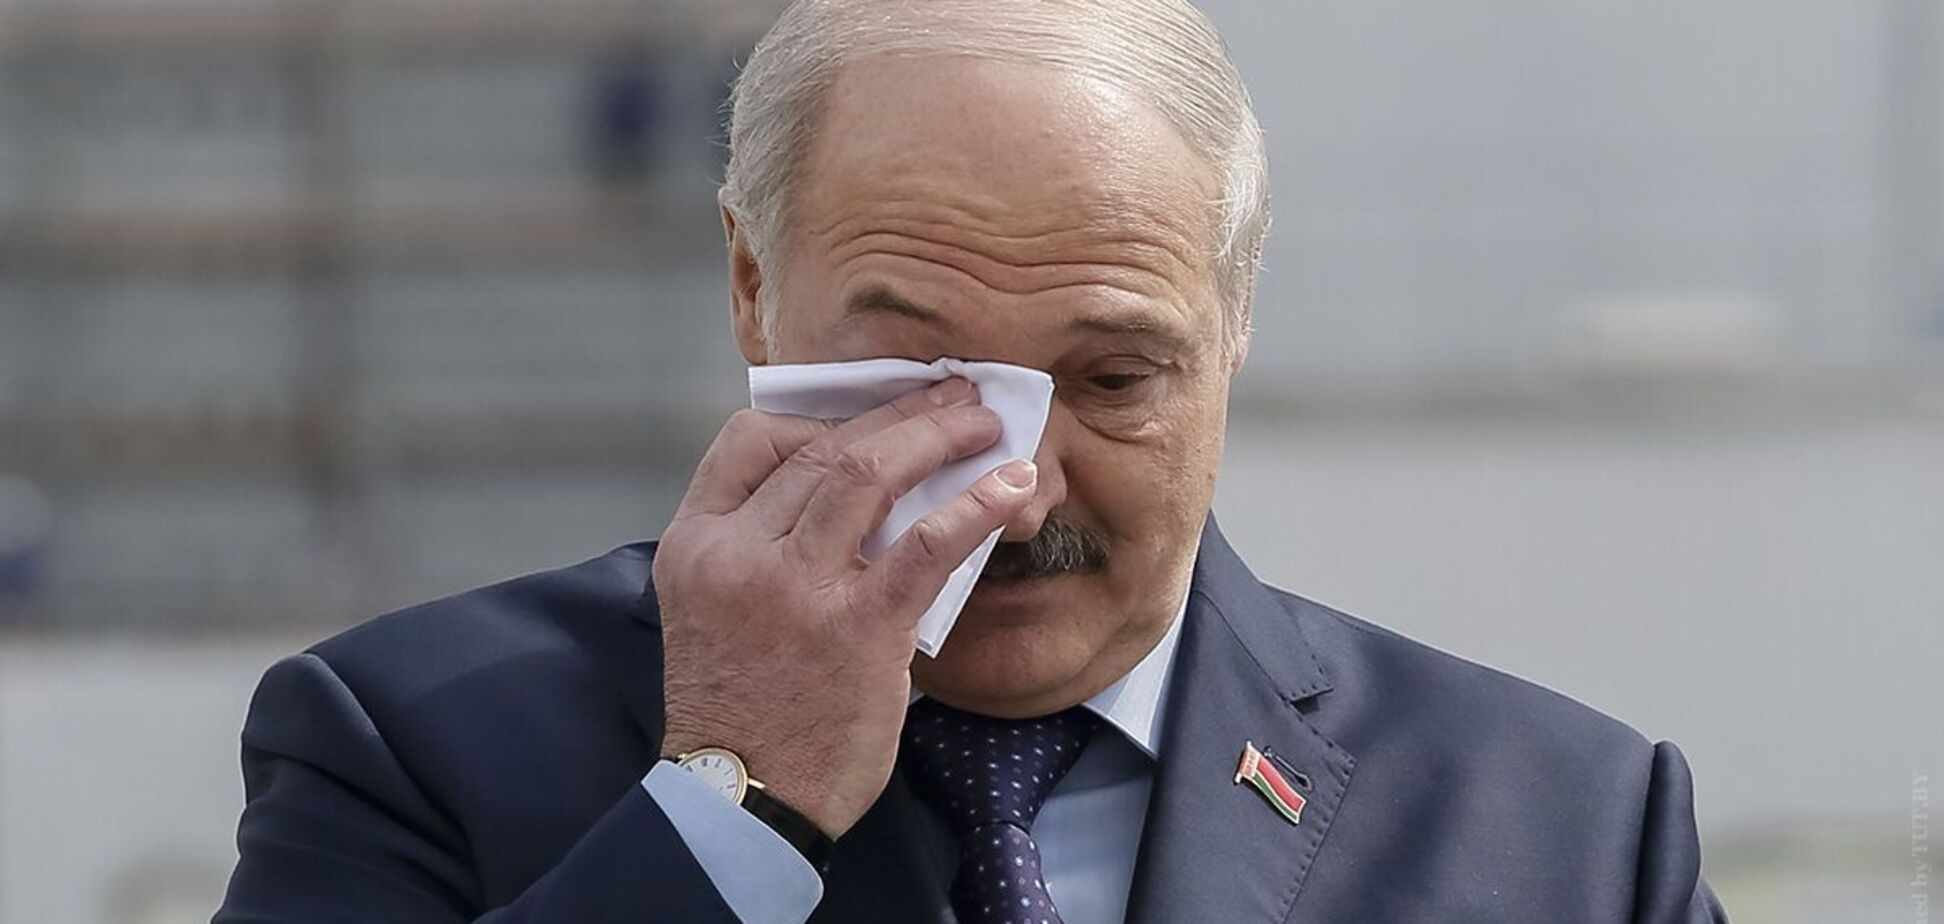 Из выступления Лукашенко вырезали платок для пота